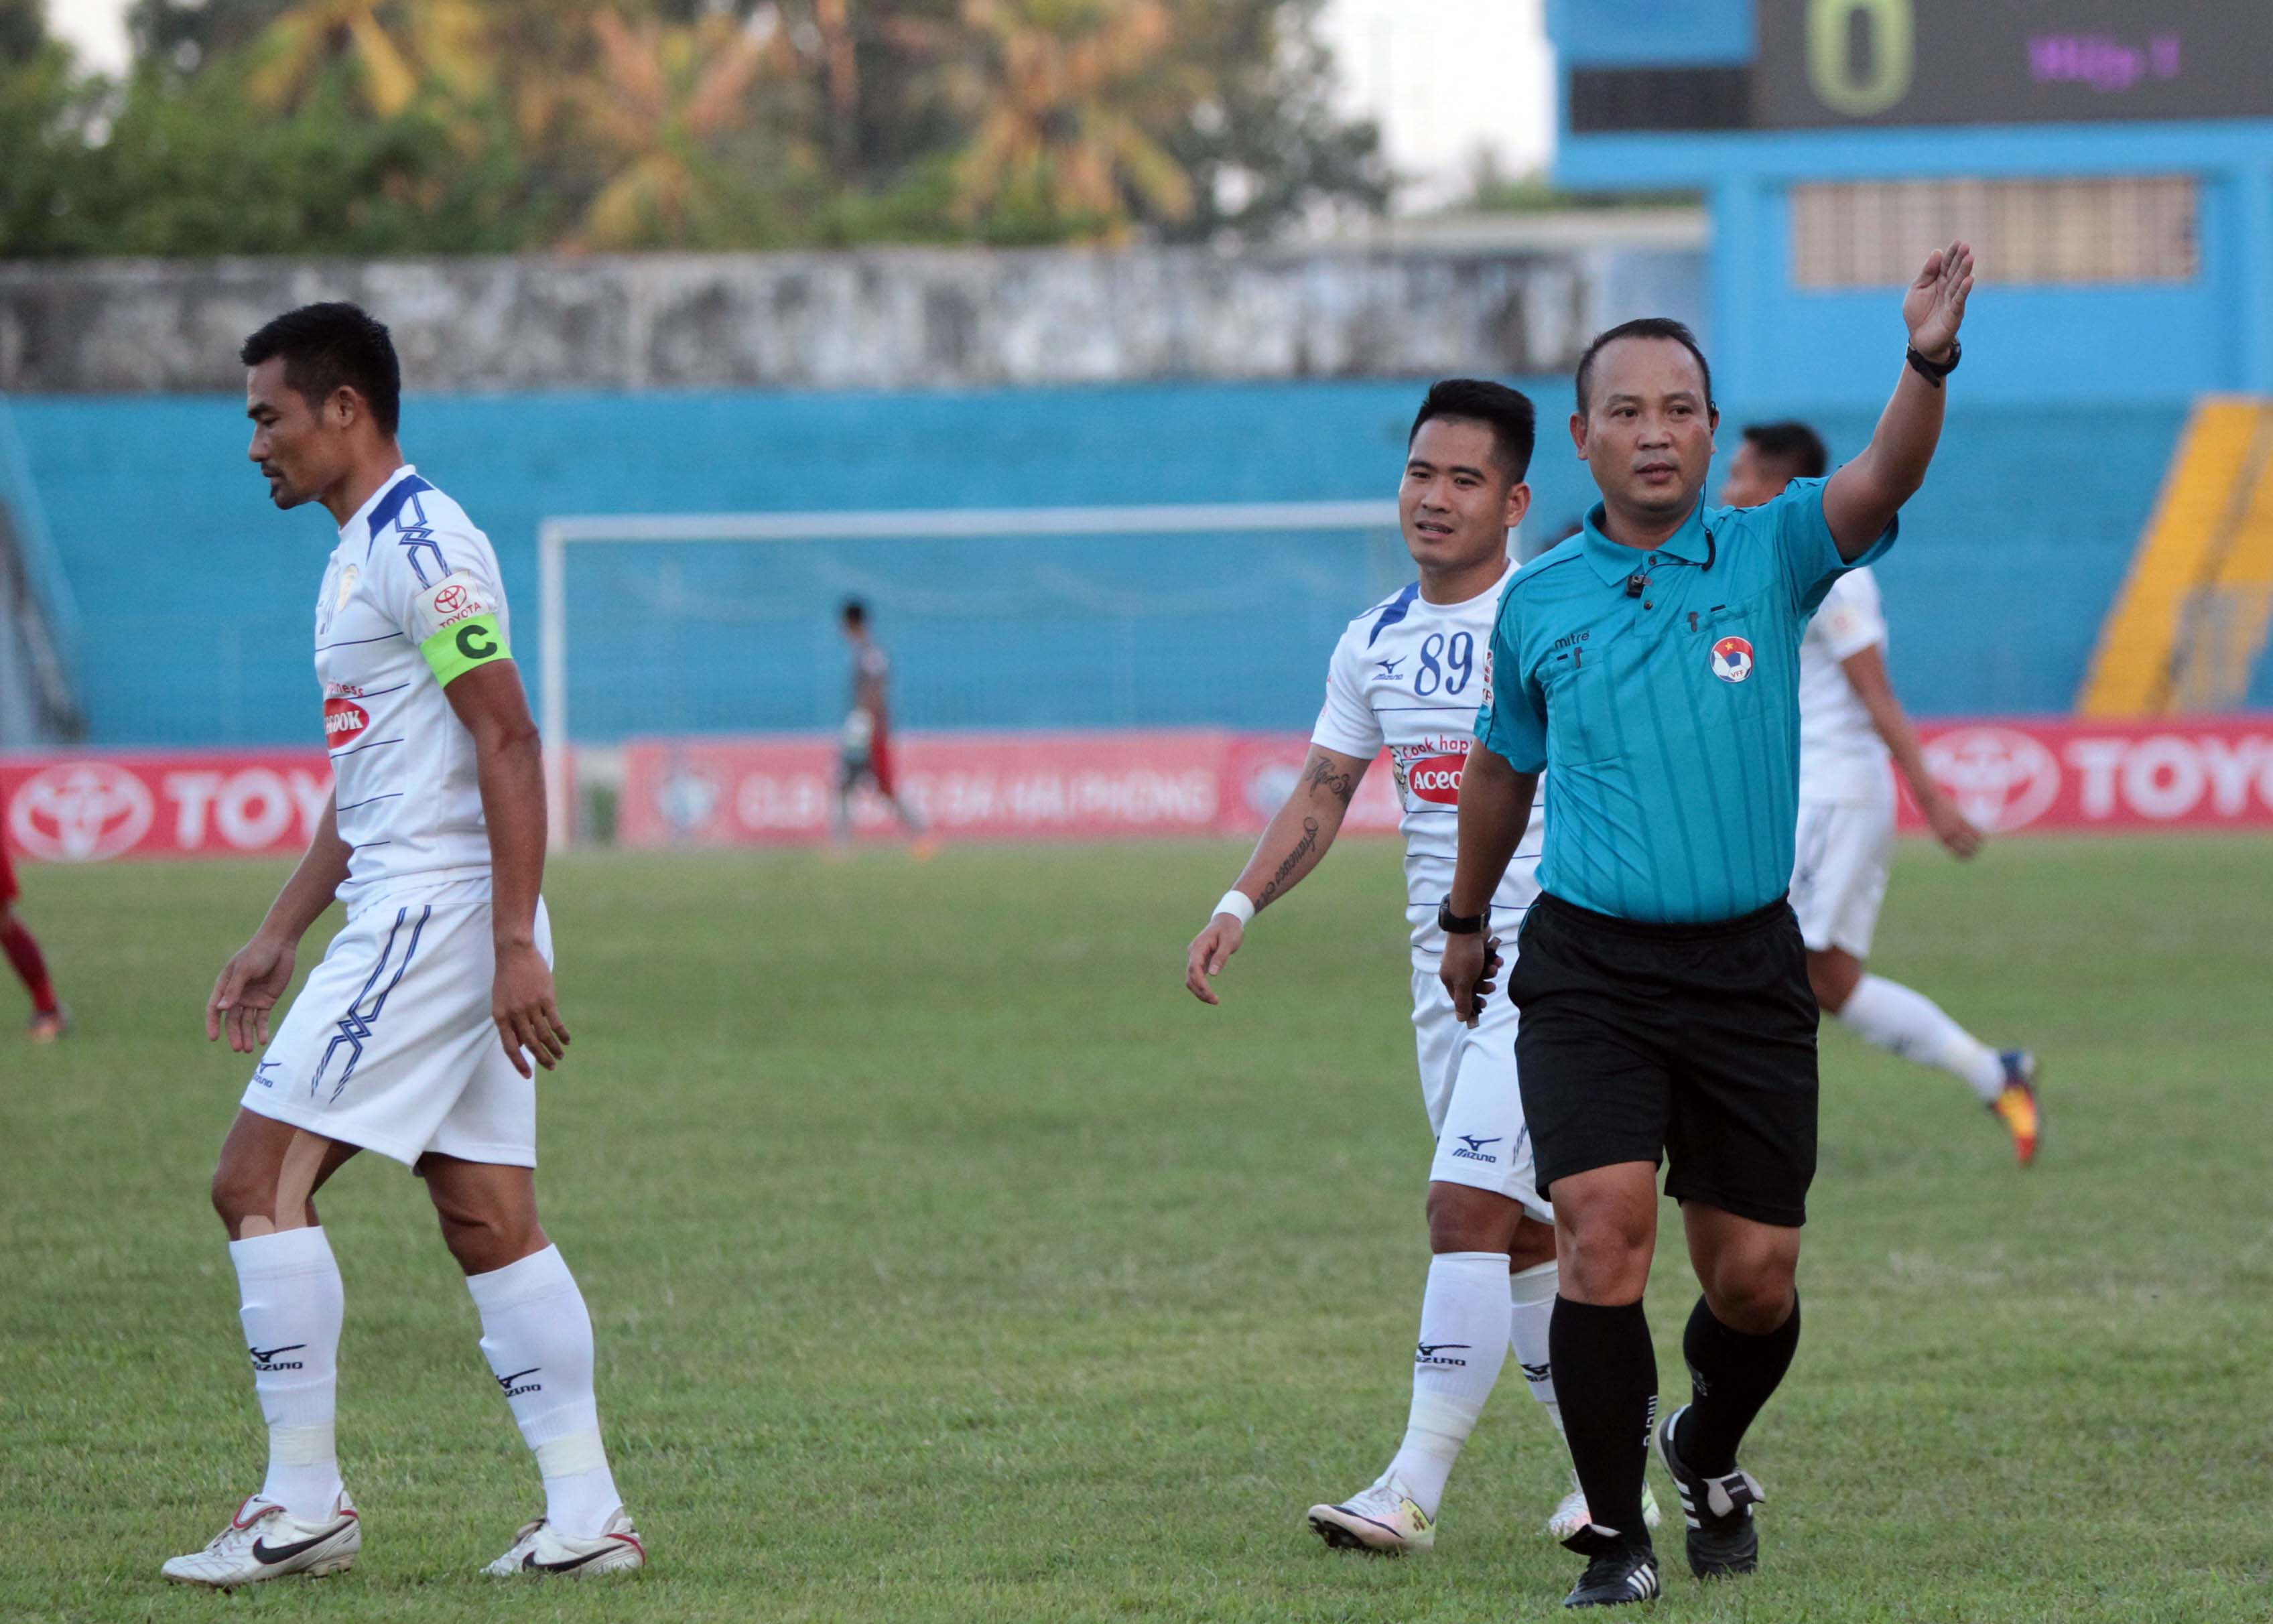  Trọng tài Nguyễn Văn Kiên đã bị cầu thủ TPHCM (trắng) và lãnh đạo CLB này chỉ trích sau trận thua Hải Phòng 1-4 ở vòng 21 V-League 2017. Ảnh: ANH PHAN